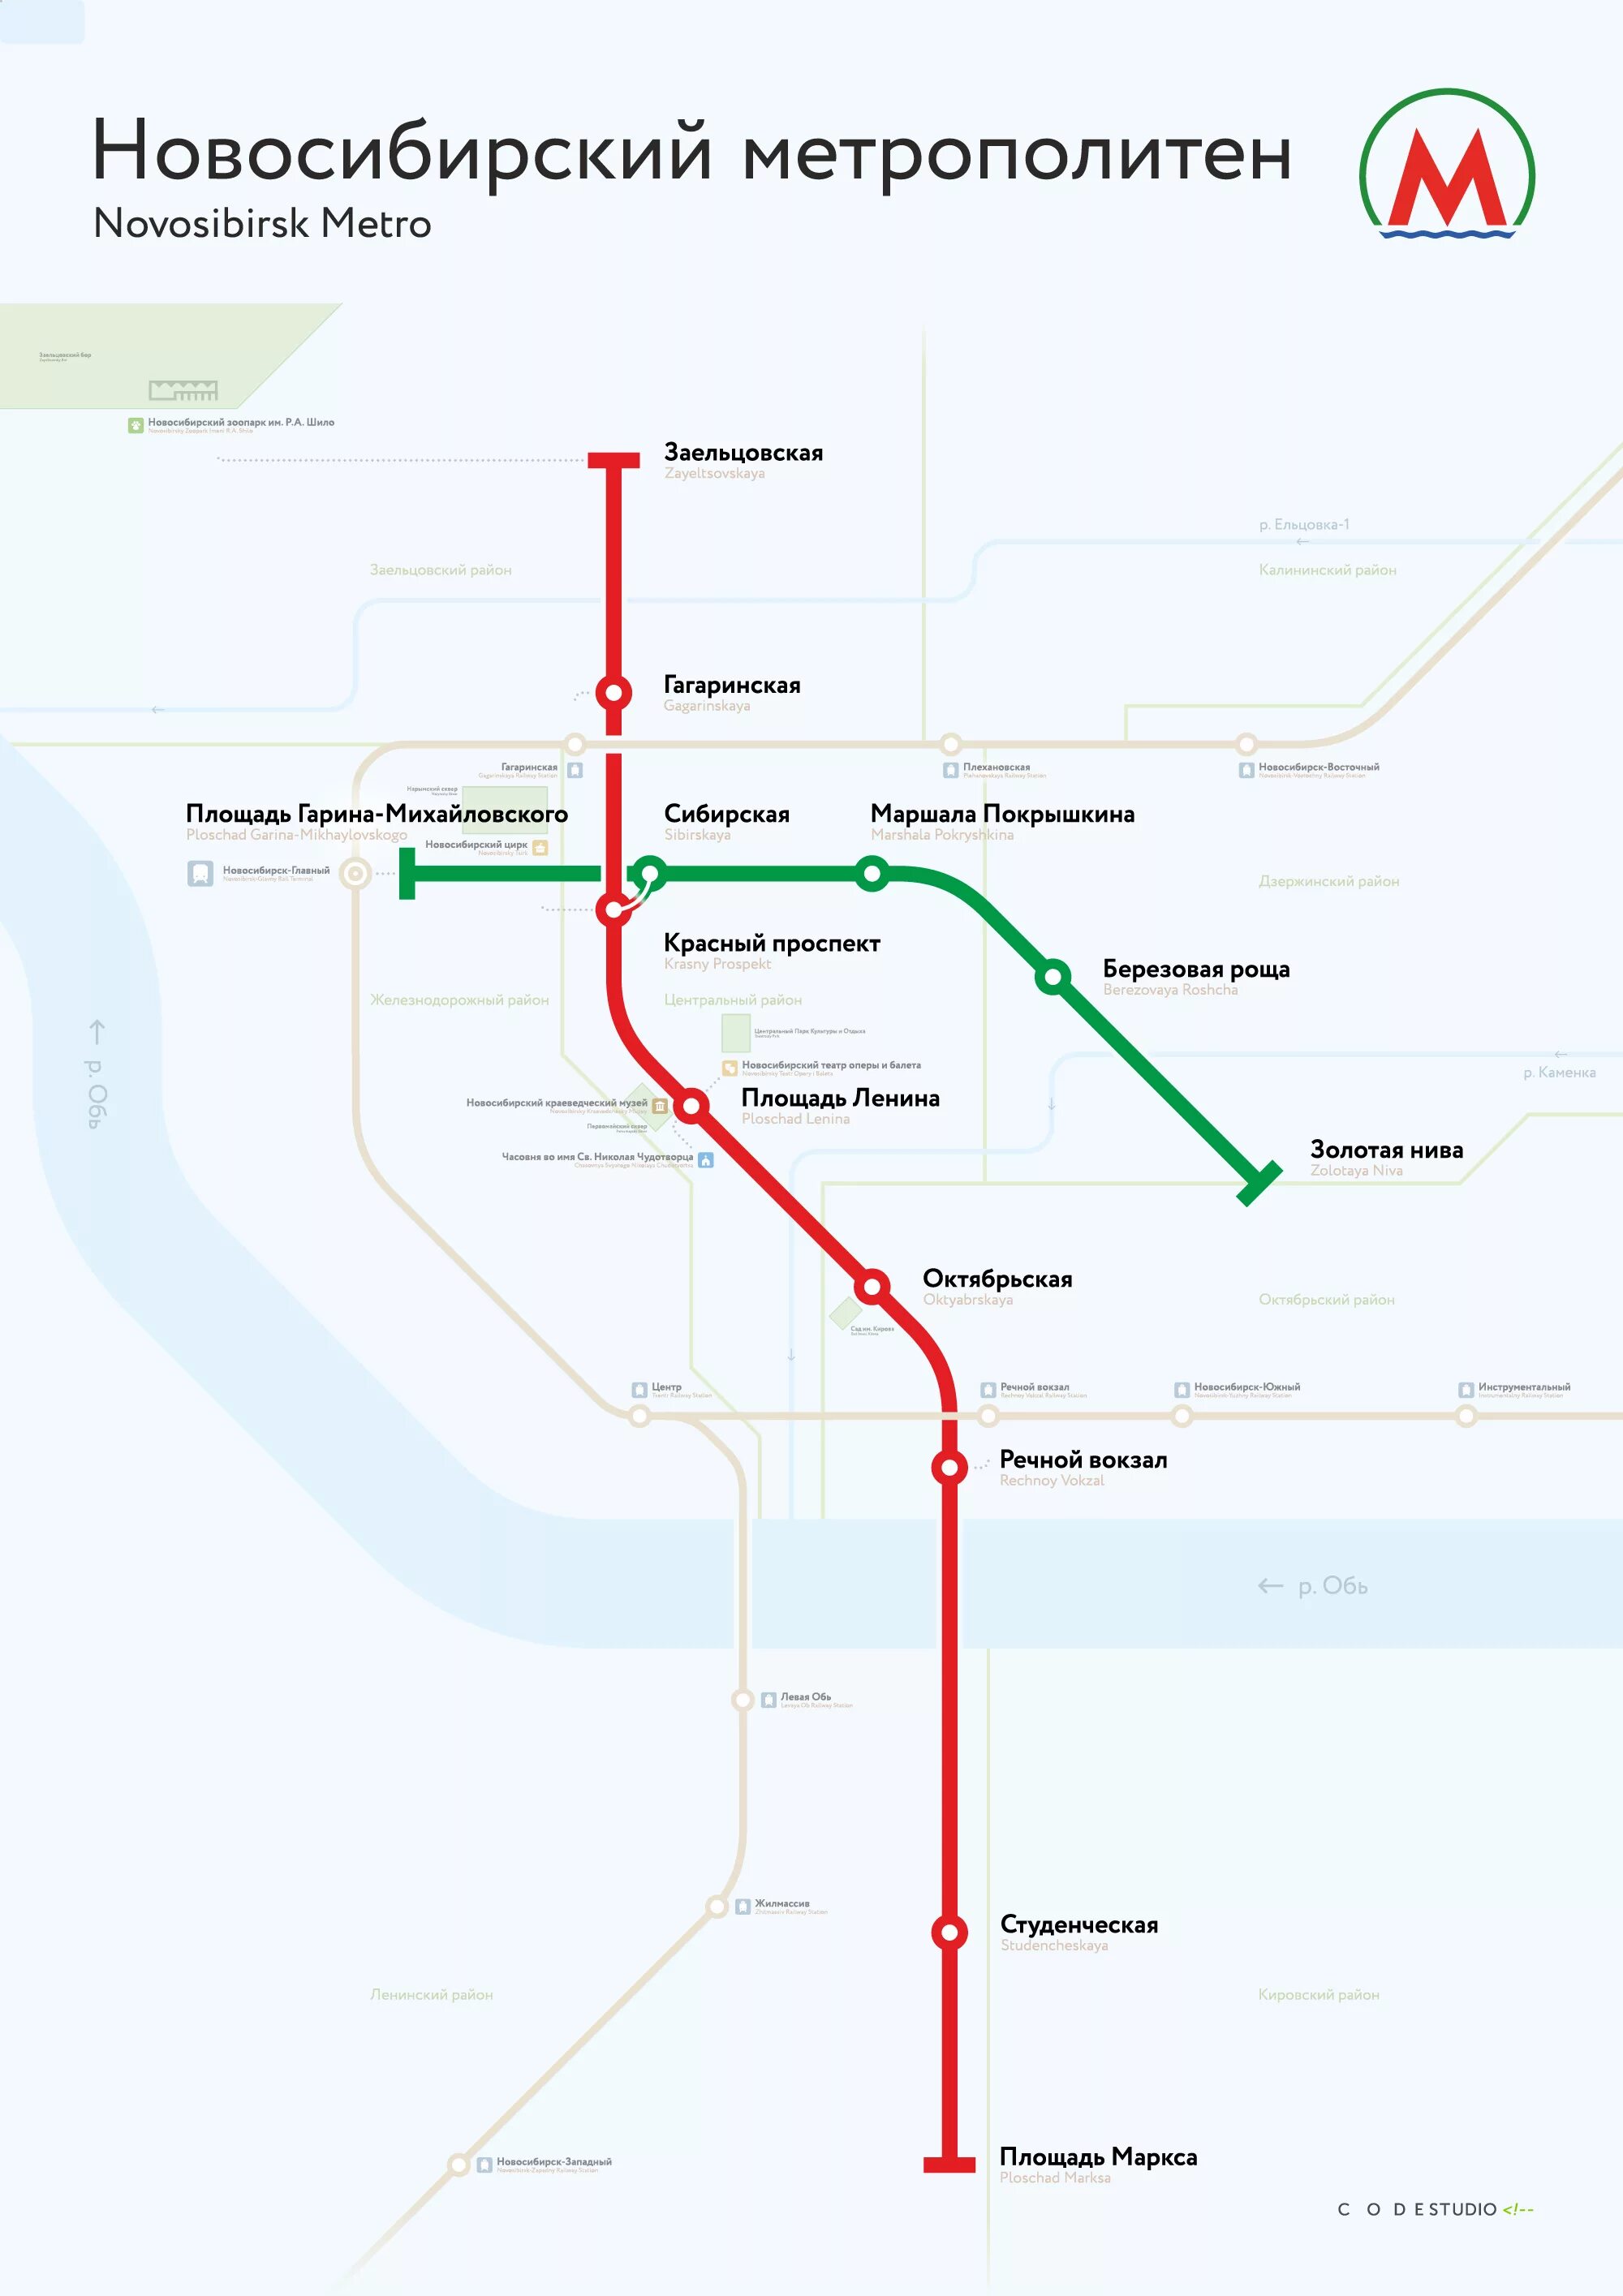 Схема метро Новосибирска 2021. Схема метро Новосибирска 2020. Новосибирский метрополитен схема 2021. Метрополитен Новосибирск схема 2020.